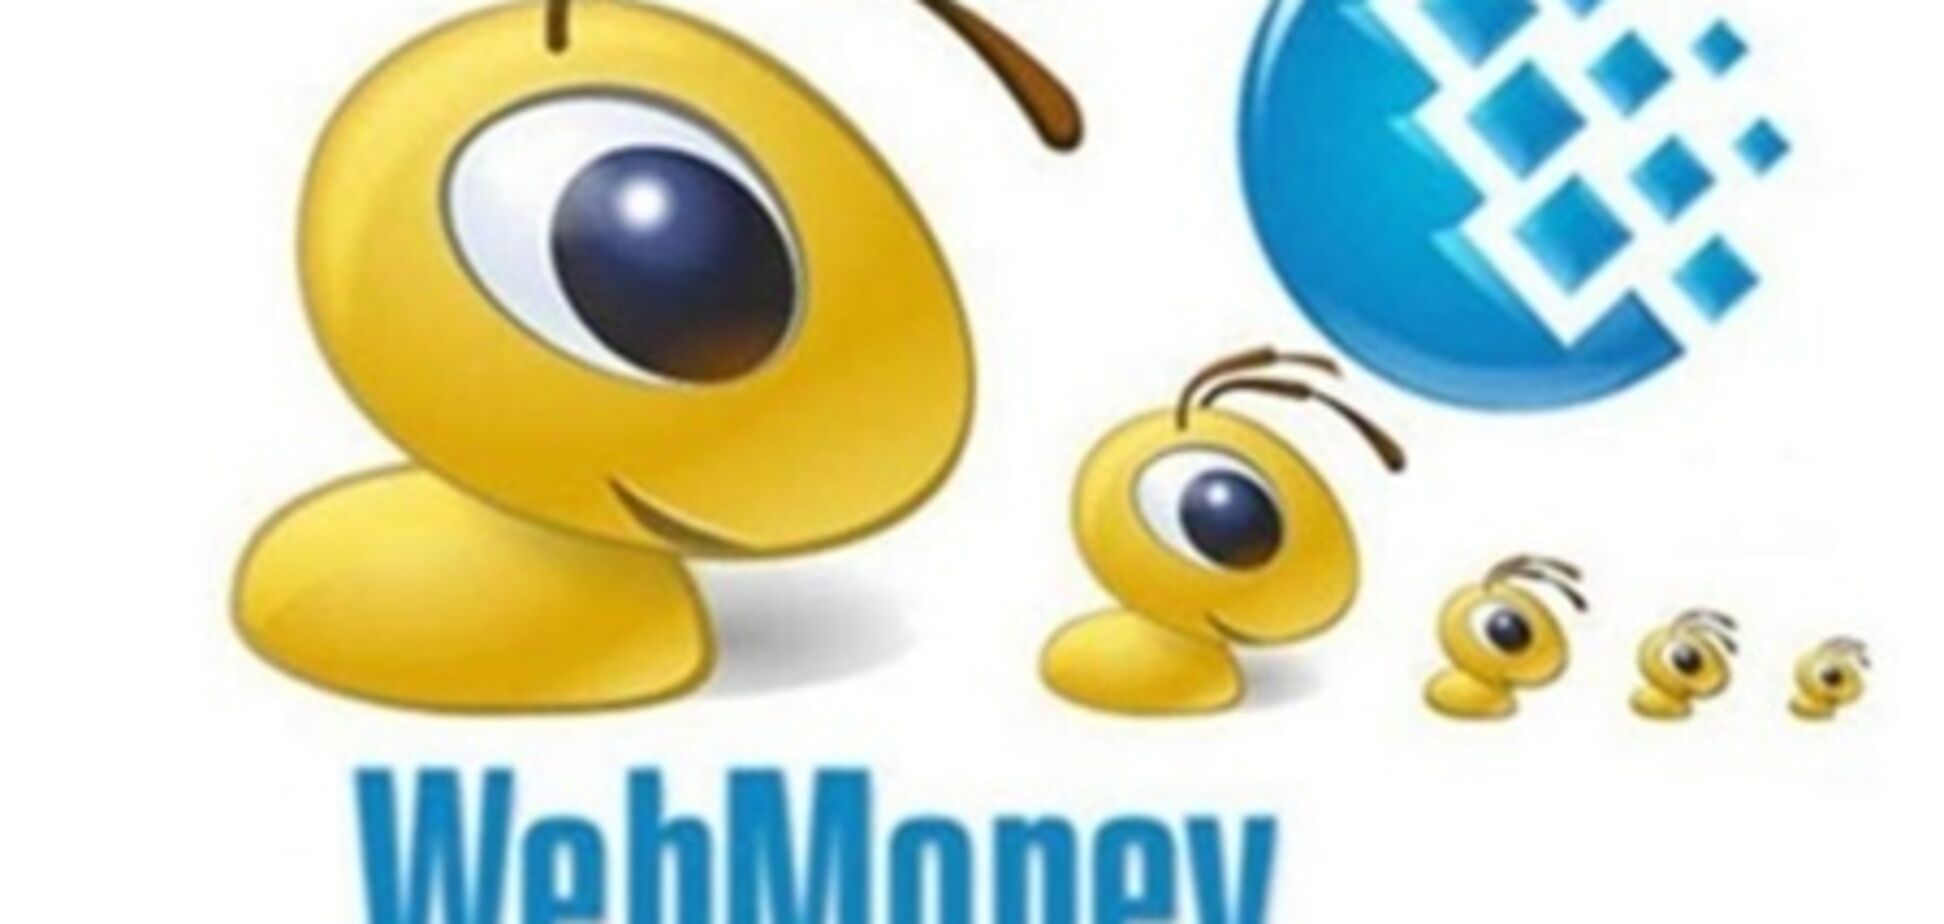 С WebMoney позволят снимать не более 4 тыс. грн в месяц